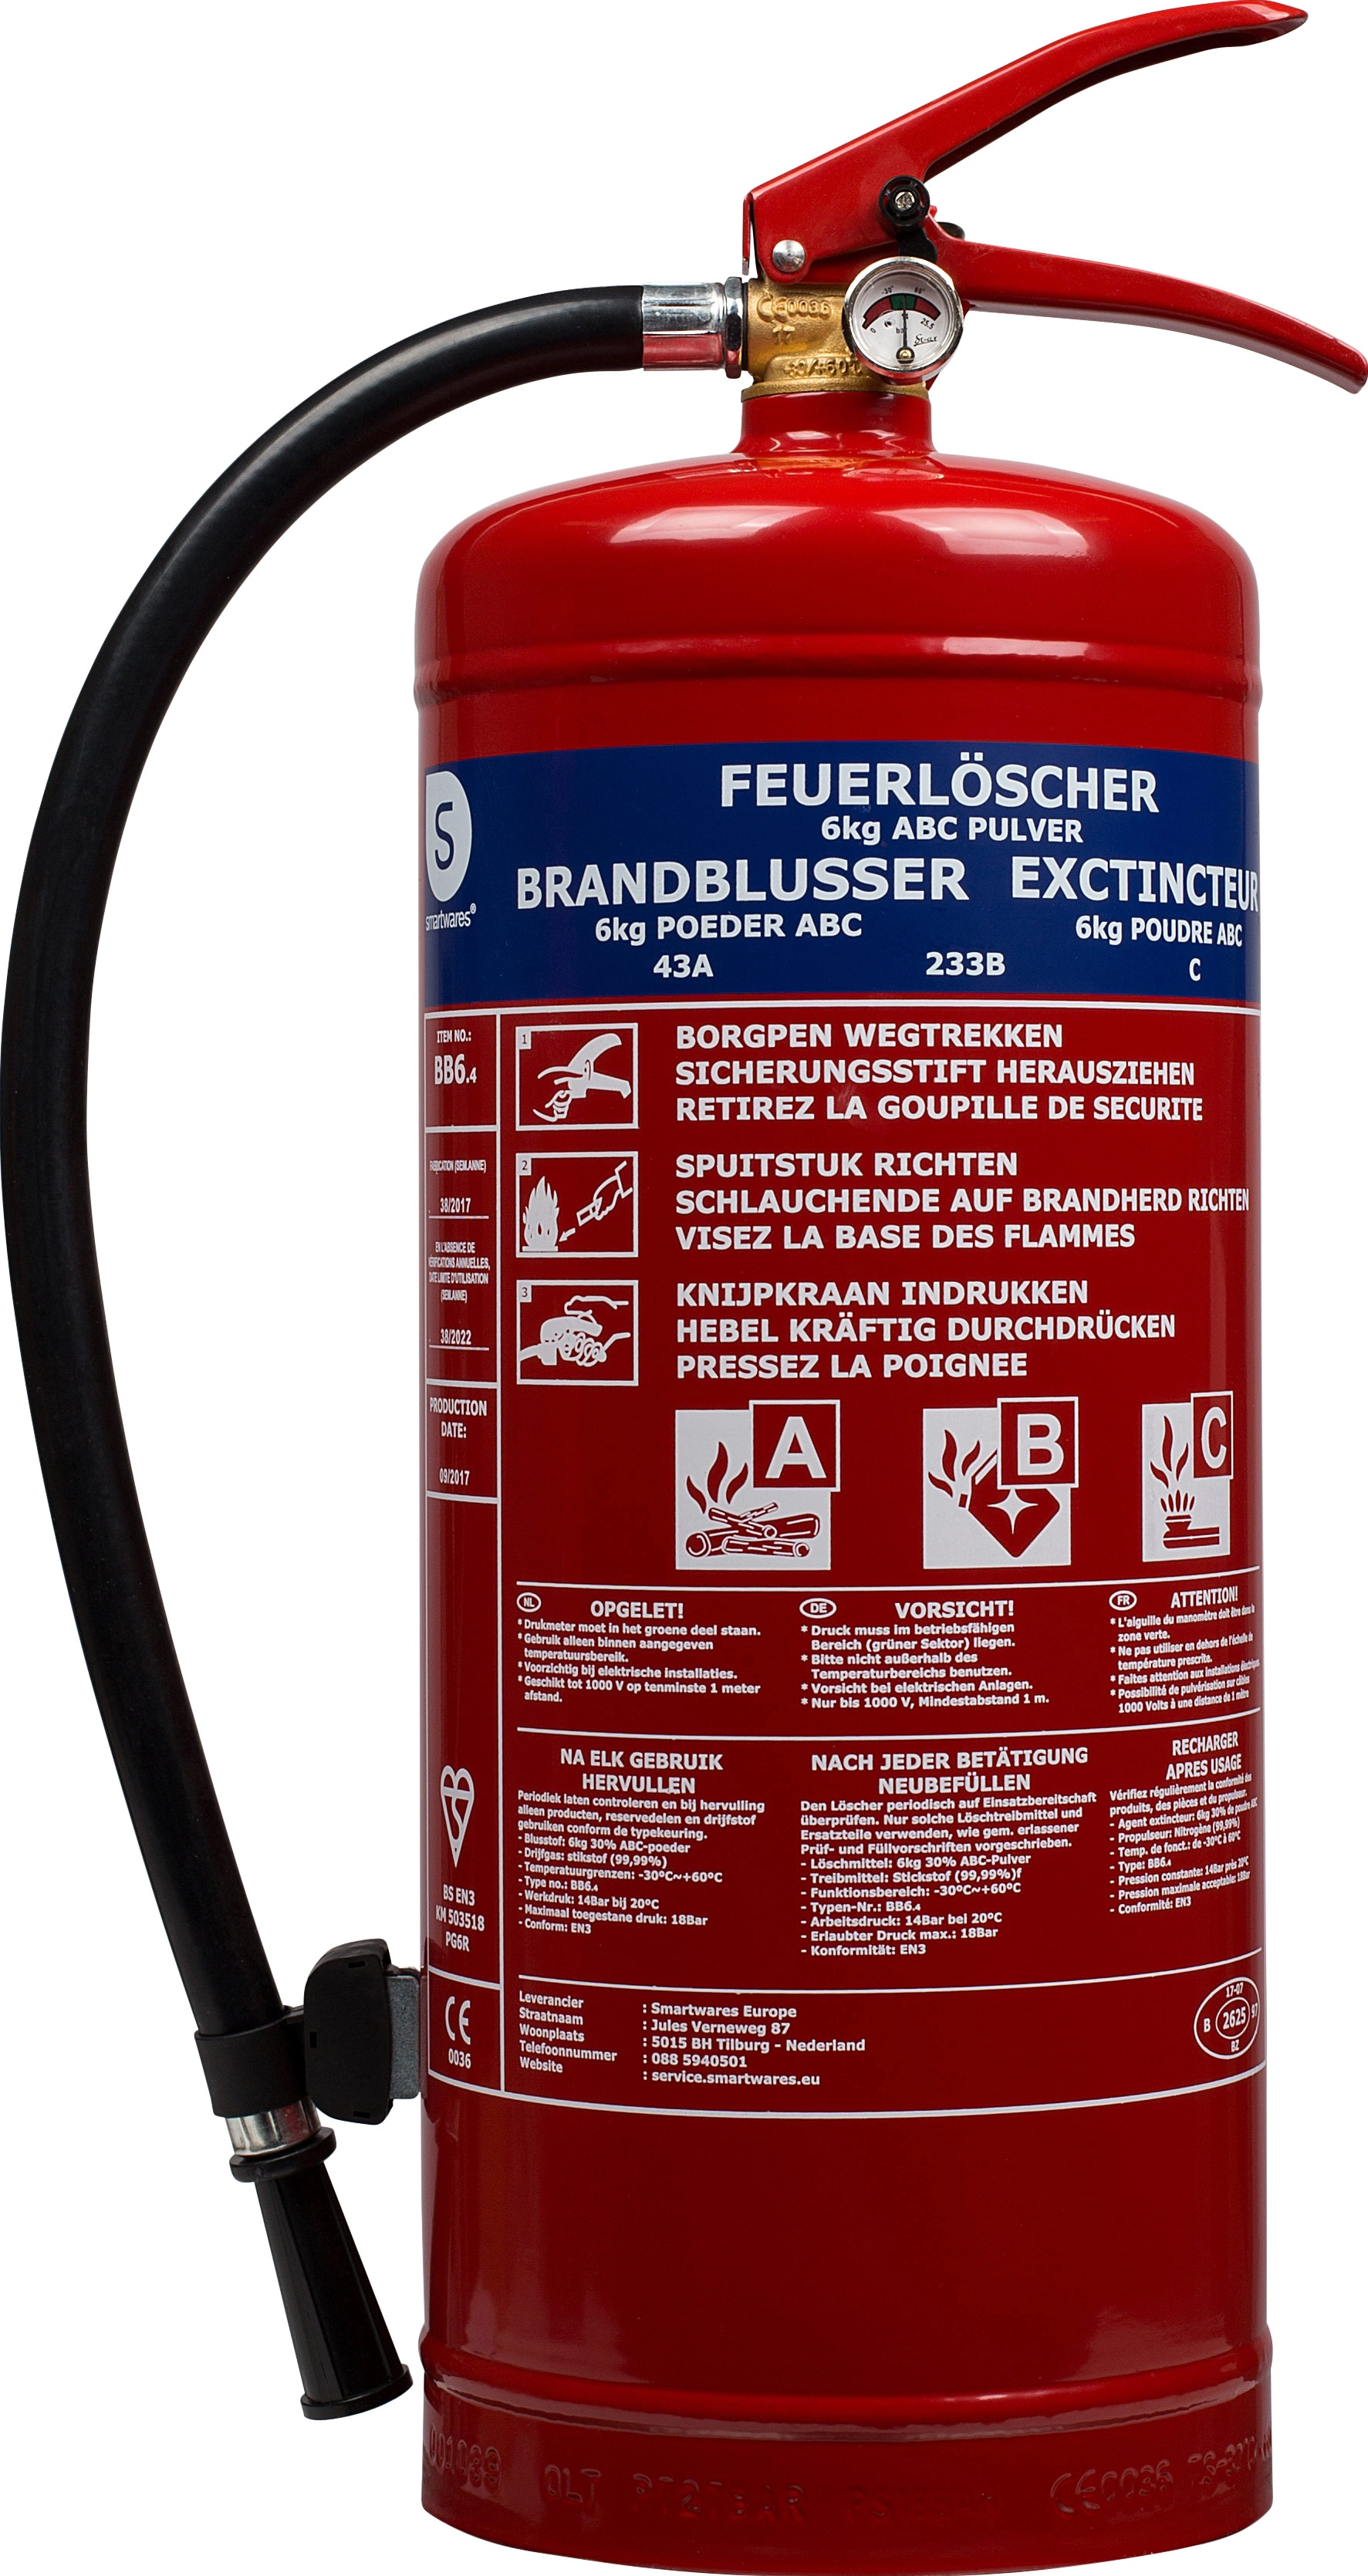 Feuerlöscher (100+ Produkte) vergleich Preise heute »